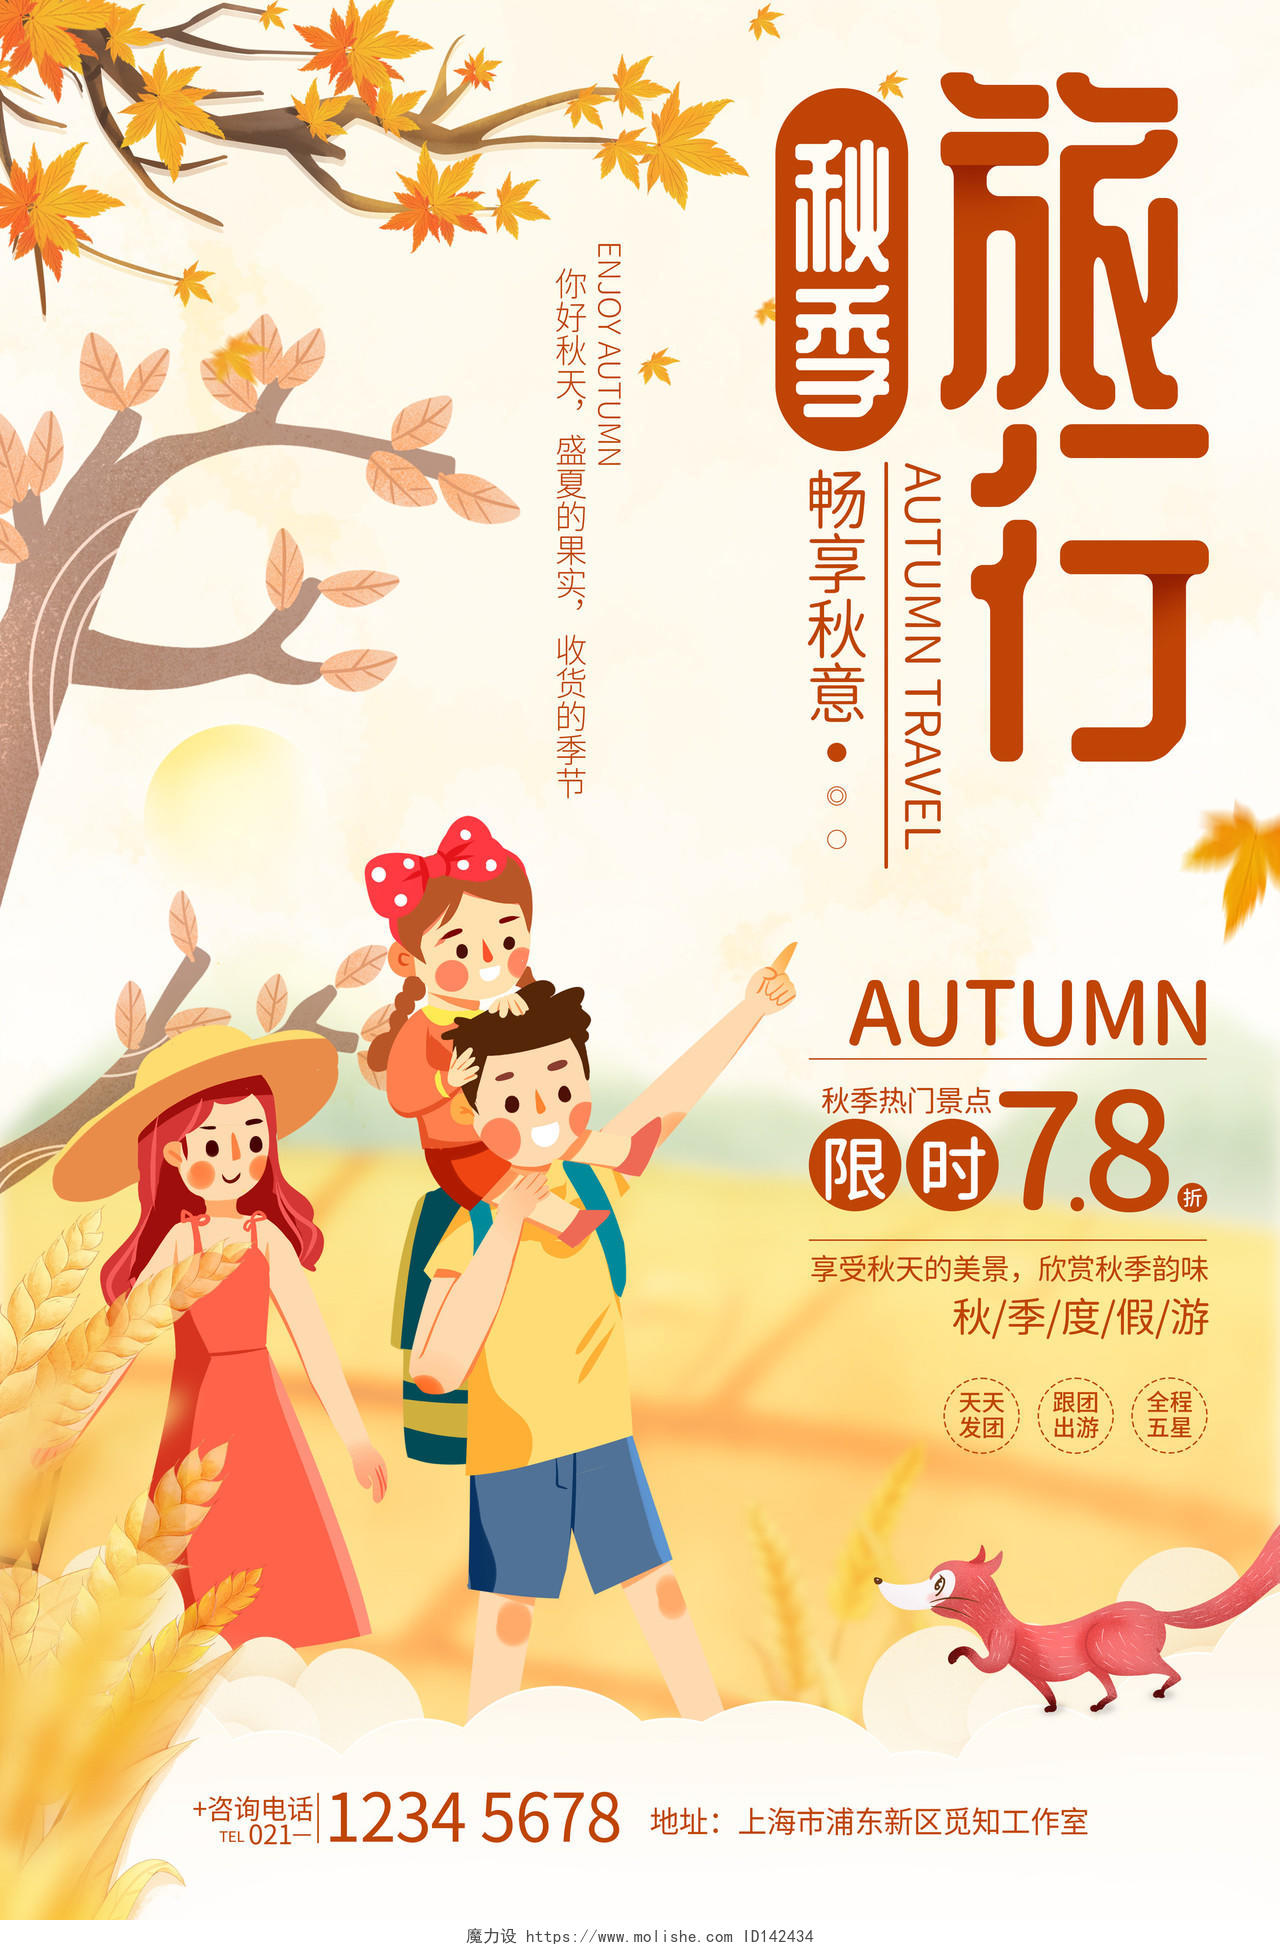 简约风格秋季旅游优惠活动宣传海报